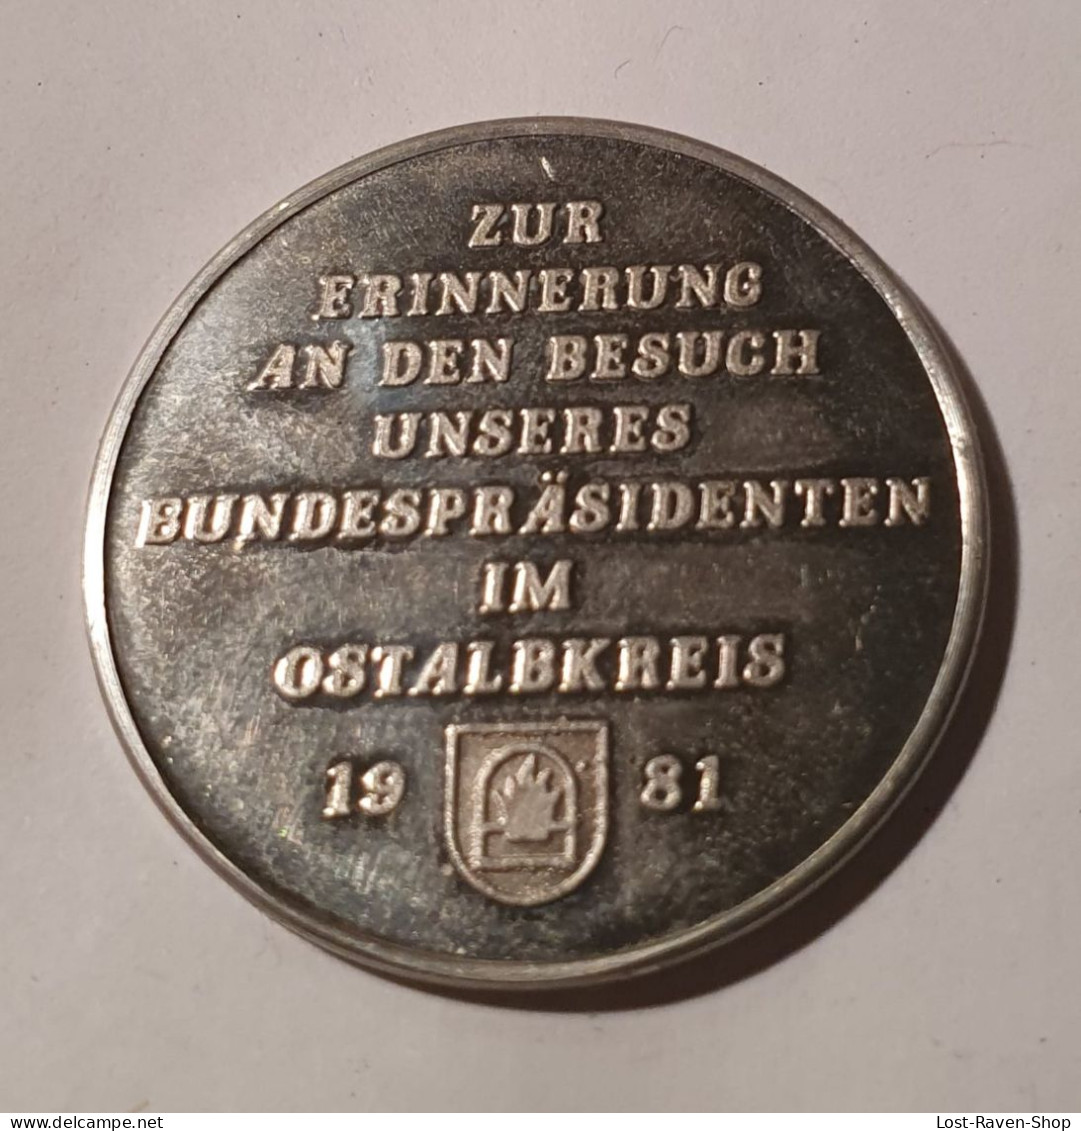 Zur Erinnerung An Den Besuch Unseres Bundespräsidenten Im Ostalbkreis 1981 - Karl Carstens - Monete Allungate (penny Souvenirs)